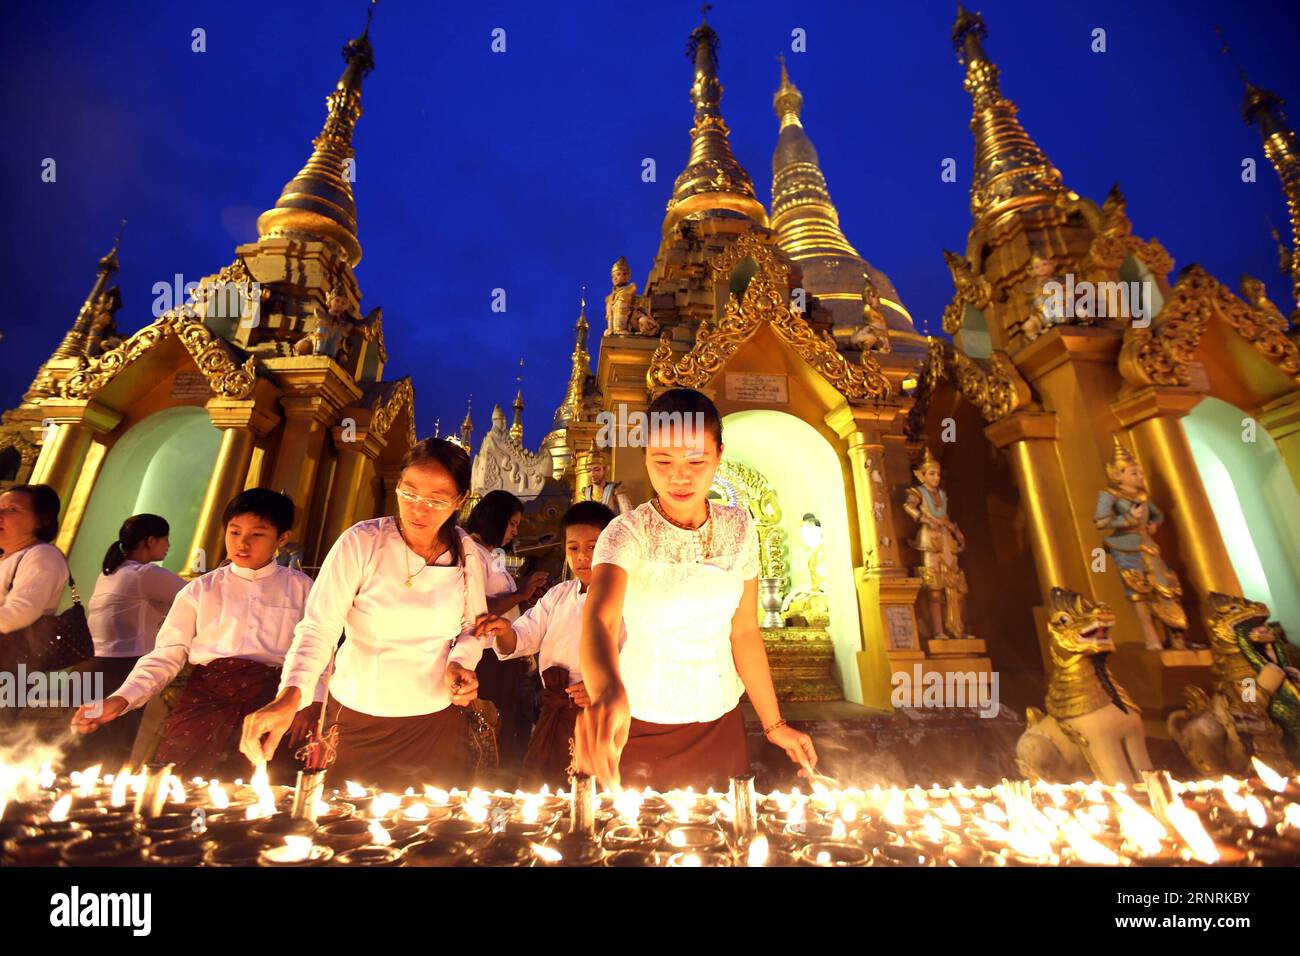 (171005) -- , 5. Oktober 2017 -- Menschen zünden Kerzen in der Shwedagon-Pagode während des Thadingyut-Festivals in Myanmar am 5. Oktober 2017 an. Das Thadingyut Festival, das Lighting Festival of Myanmar, findet am Vollmondtag des burmesischen Mondmonats Thadingyut statt. U Aung) (dtf) MYANMAR--thadingyut FESTIVAL yangon PUBLICATIONxNOTxINxCHN Stockfoto